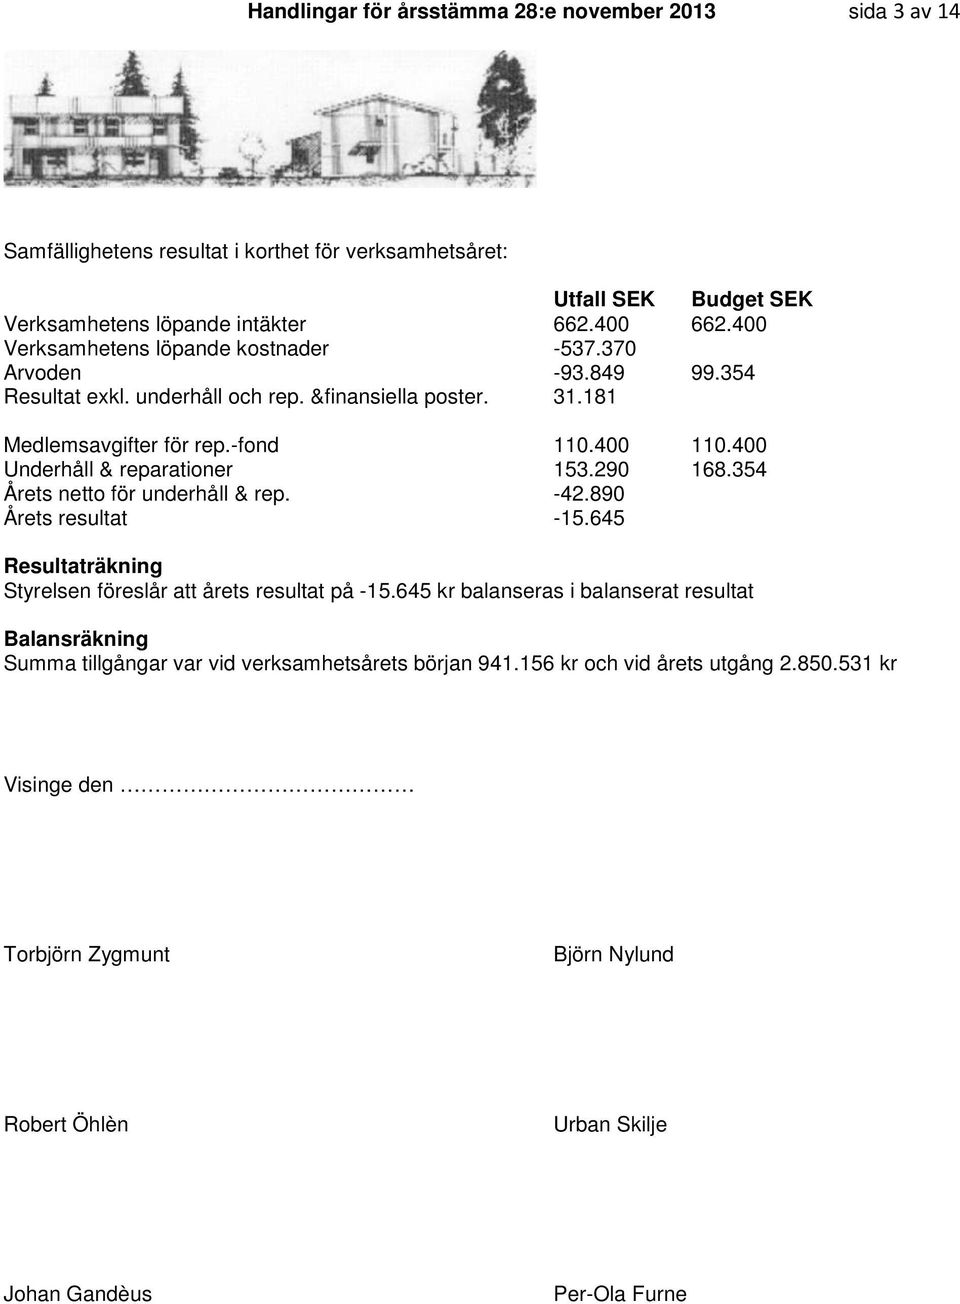 400 Underhåll & reparationer 153.290 168.354 Årets netto för underhåll & rep. -42.890 Årets resultat -15.645 Resultaträkning Styrelsen föreslår att årets resultat på -15.